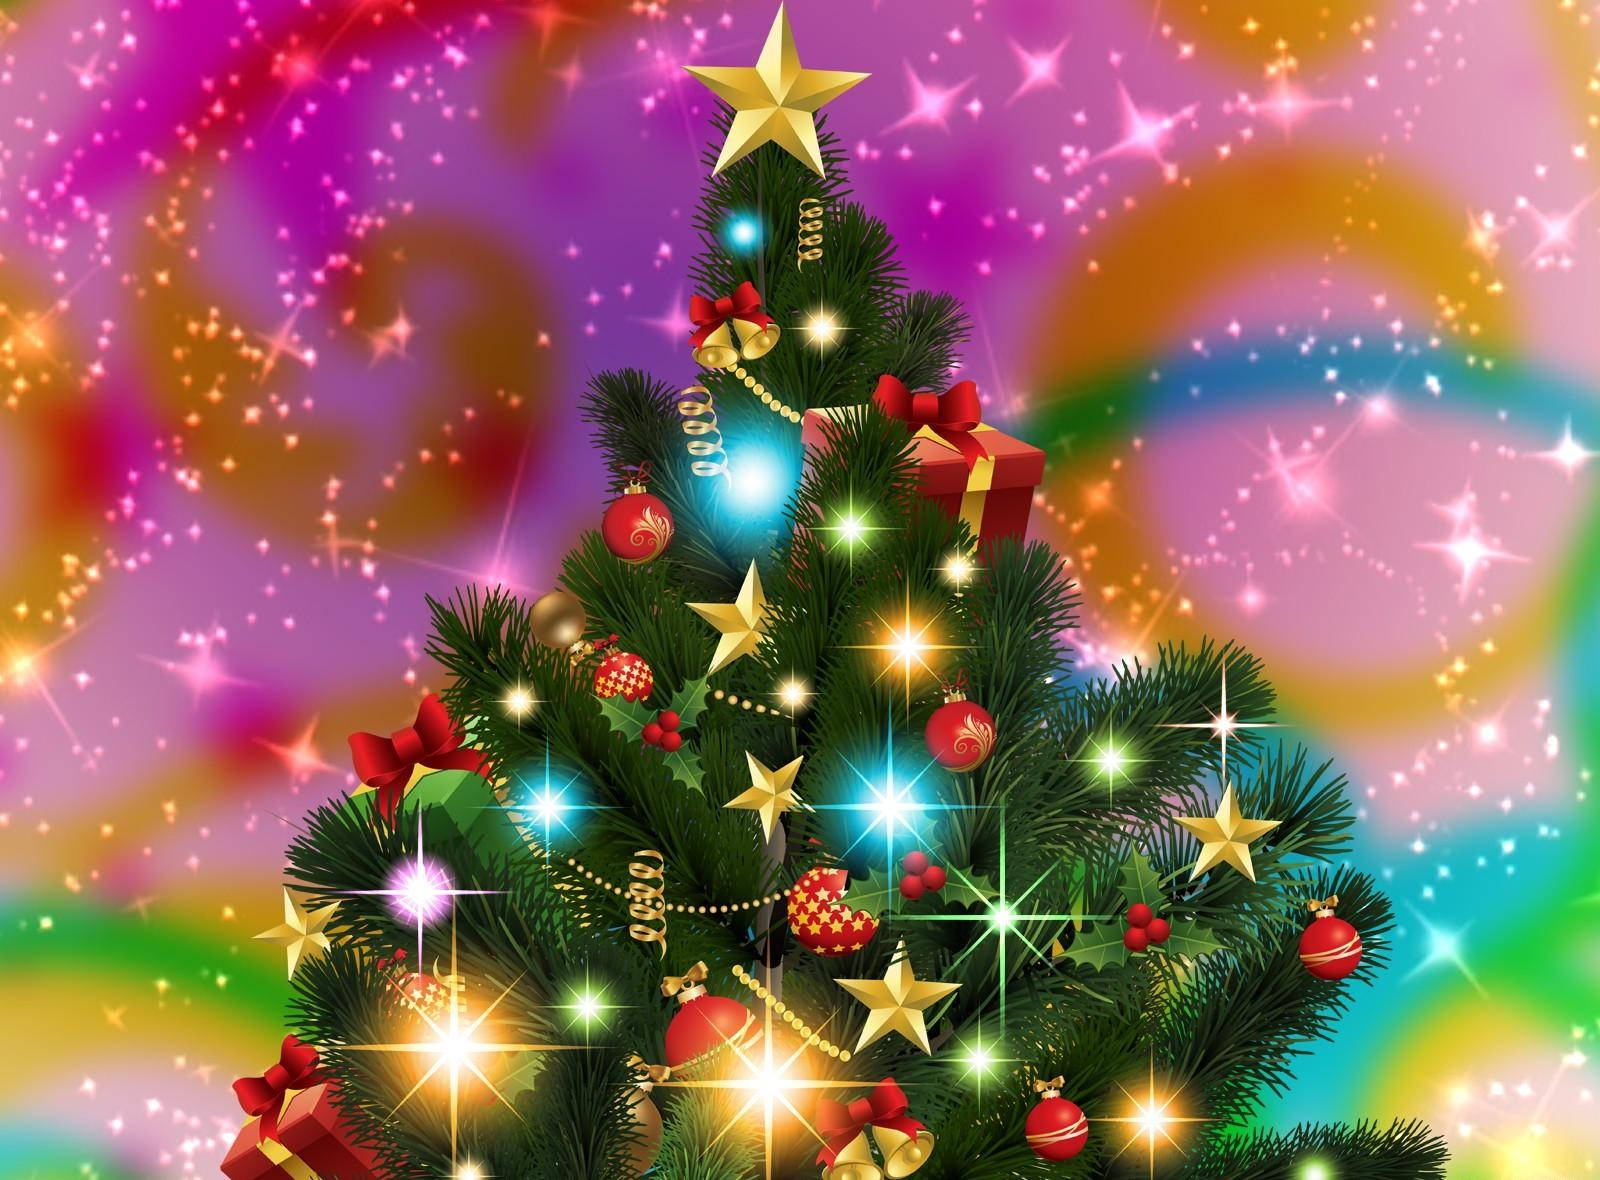 Colorful Christmas Tree Holiday Digital Art